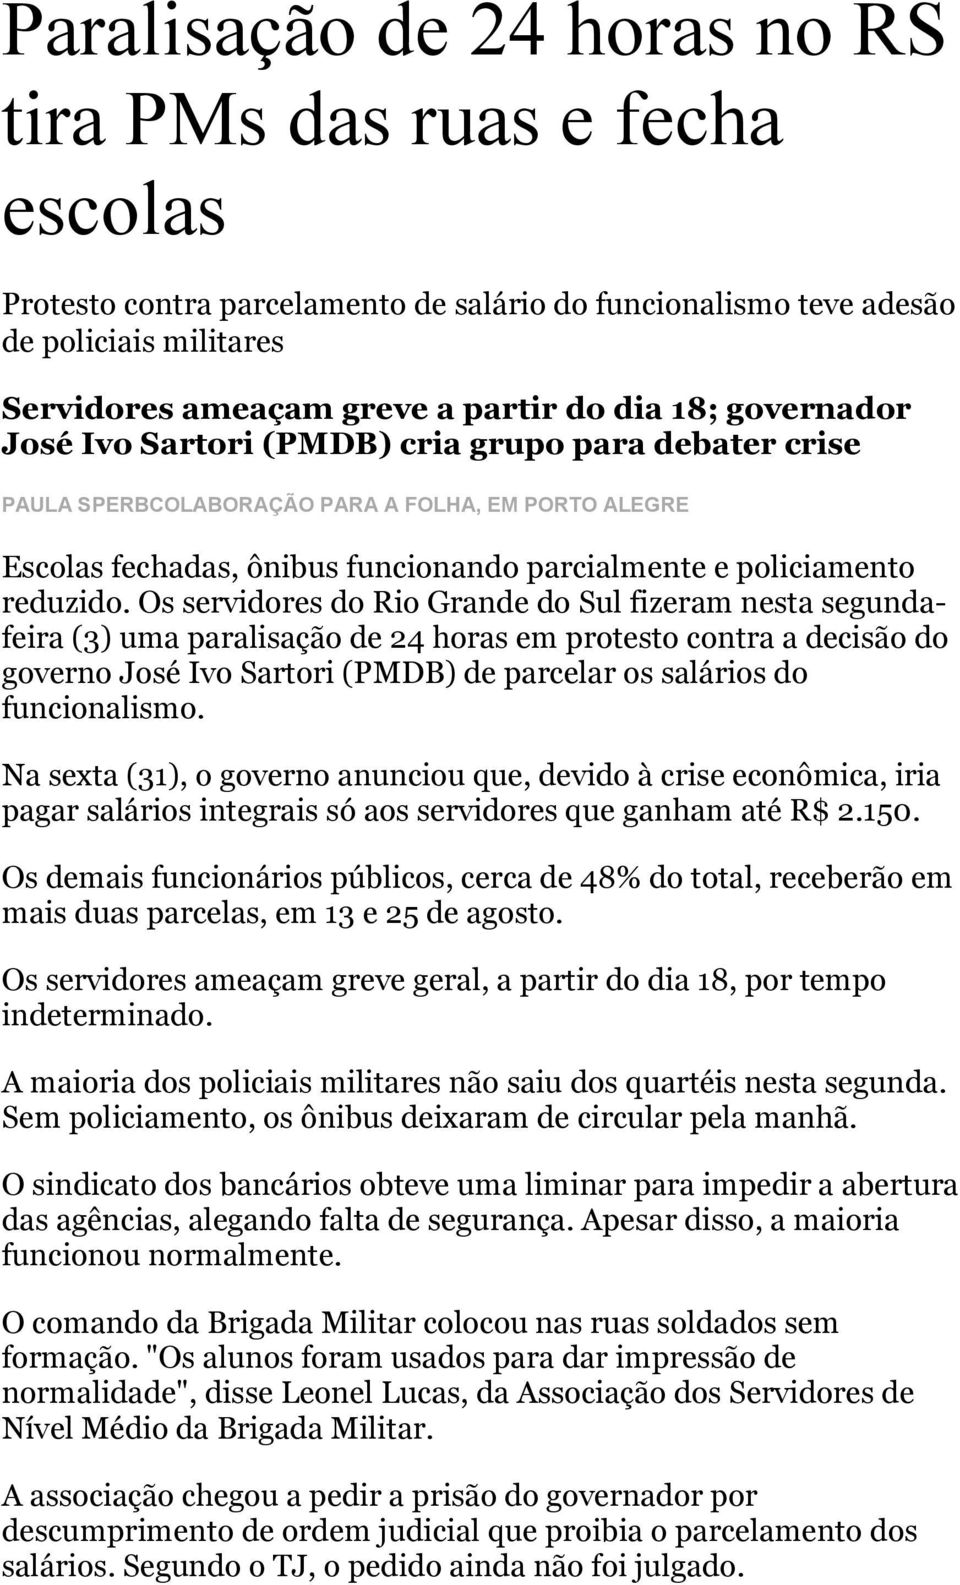 Os servidores do Rio Grande do Sul fizeram nesta segundafeira (3) uma paralisação de 24 horas em protesto contra a decisão do governo José Ivo Sartori (PMDB) de parcelar os salários do funcionalismo.